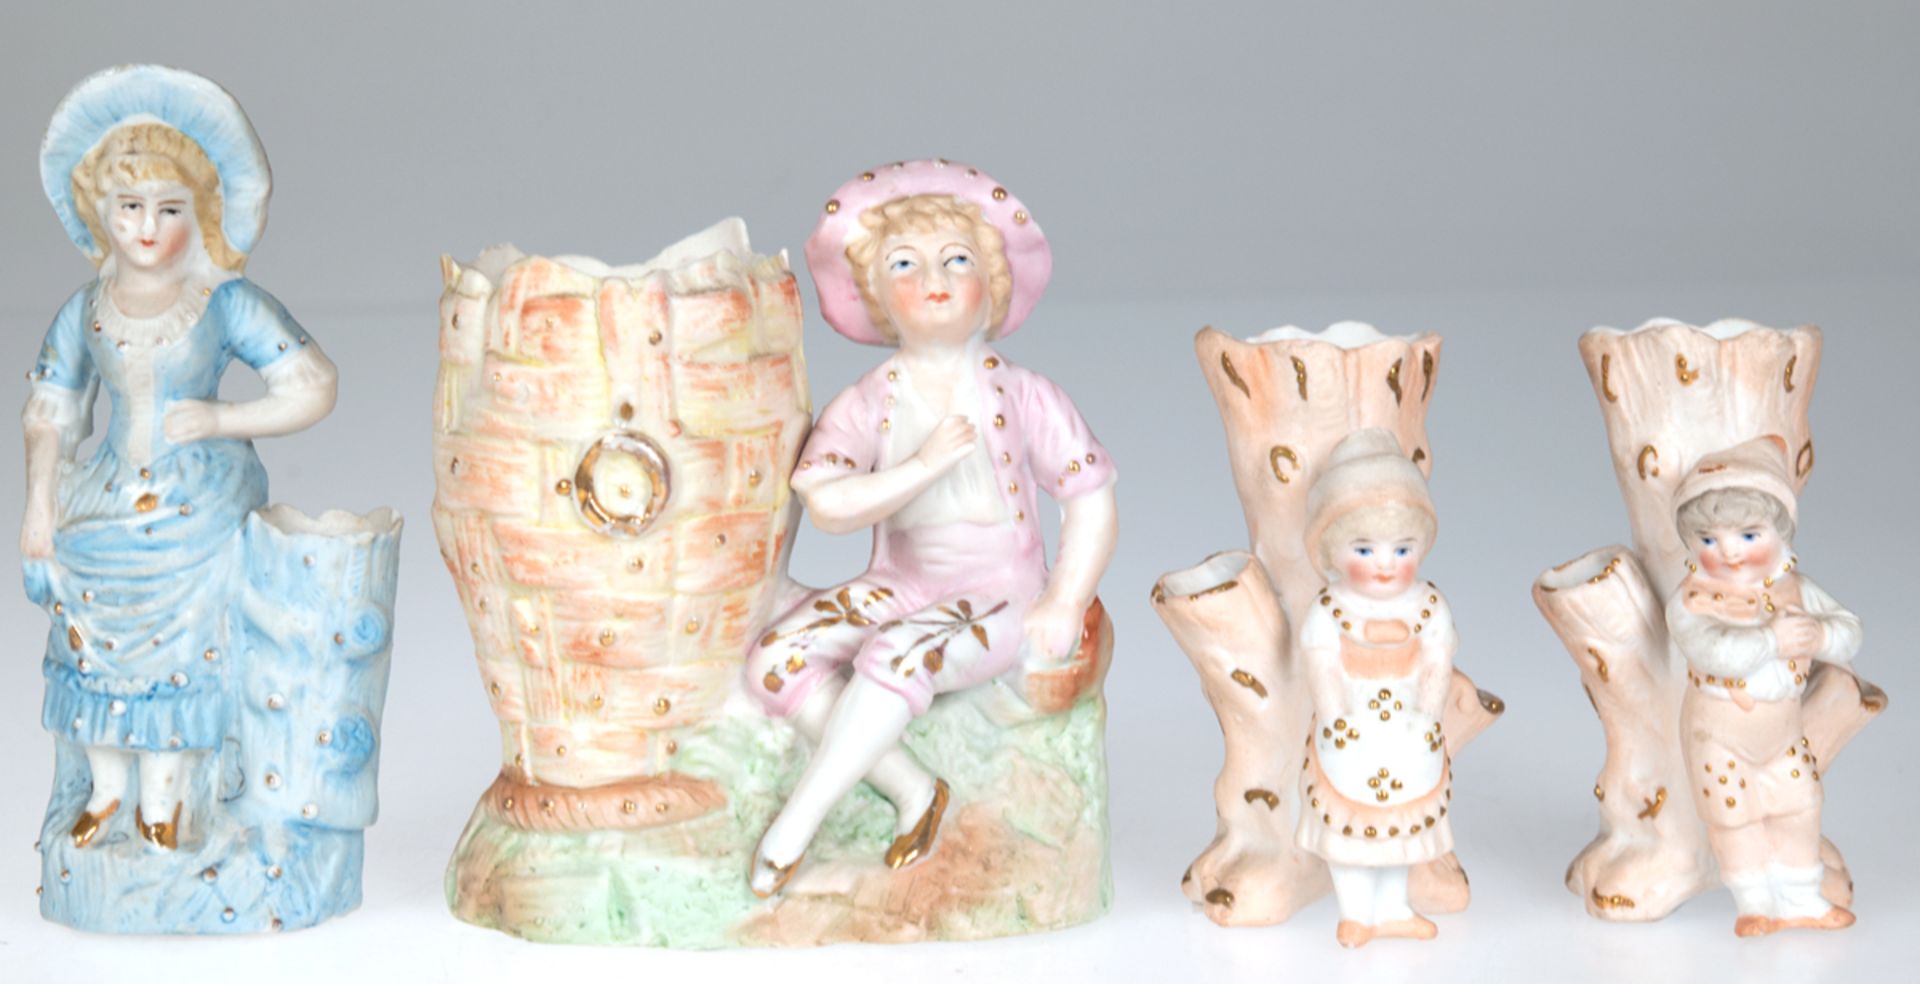 4 diverse Biskuitporzellan-Figuren an Gefäß (Vase) stehend, polychrom bemalt mit Goldstaffage, H. 1